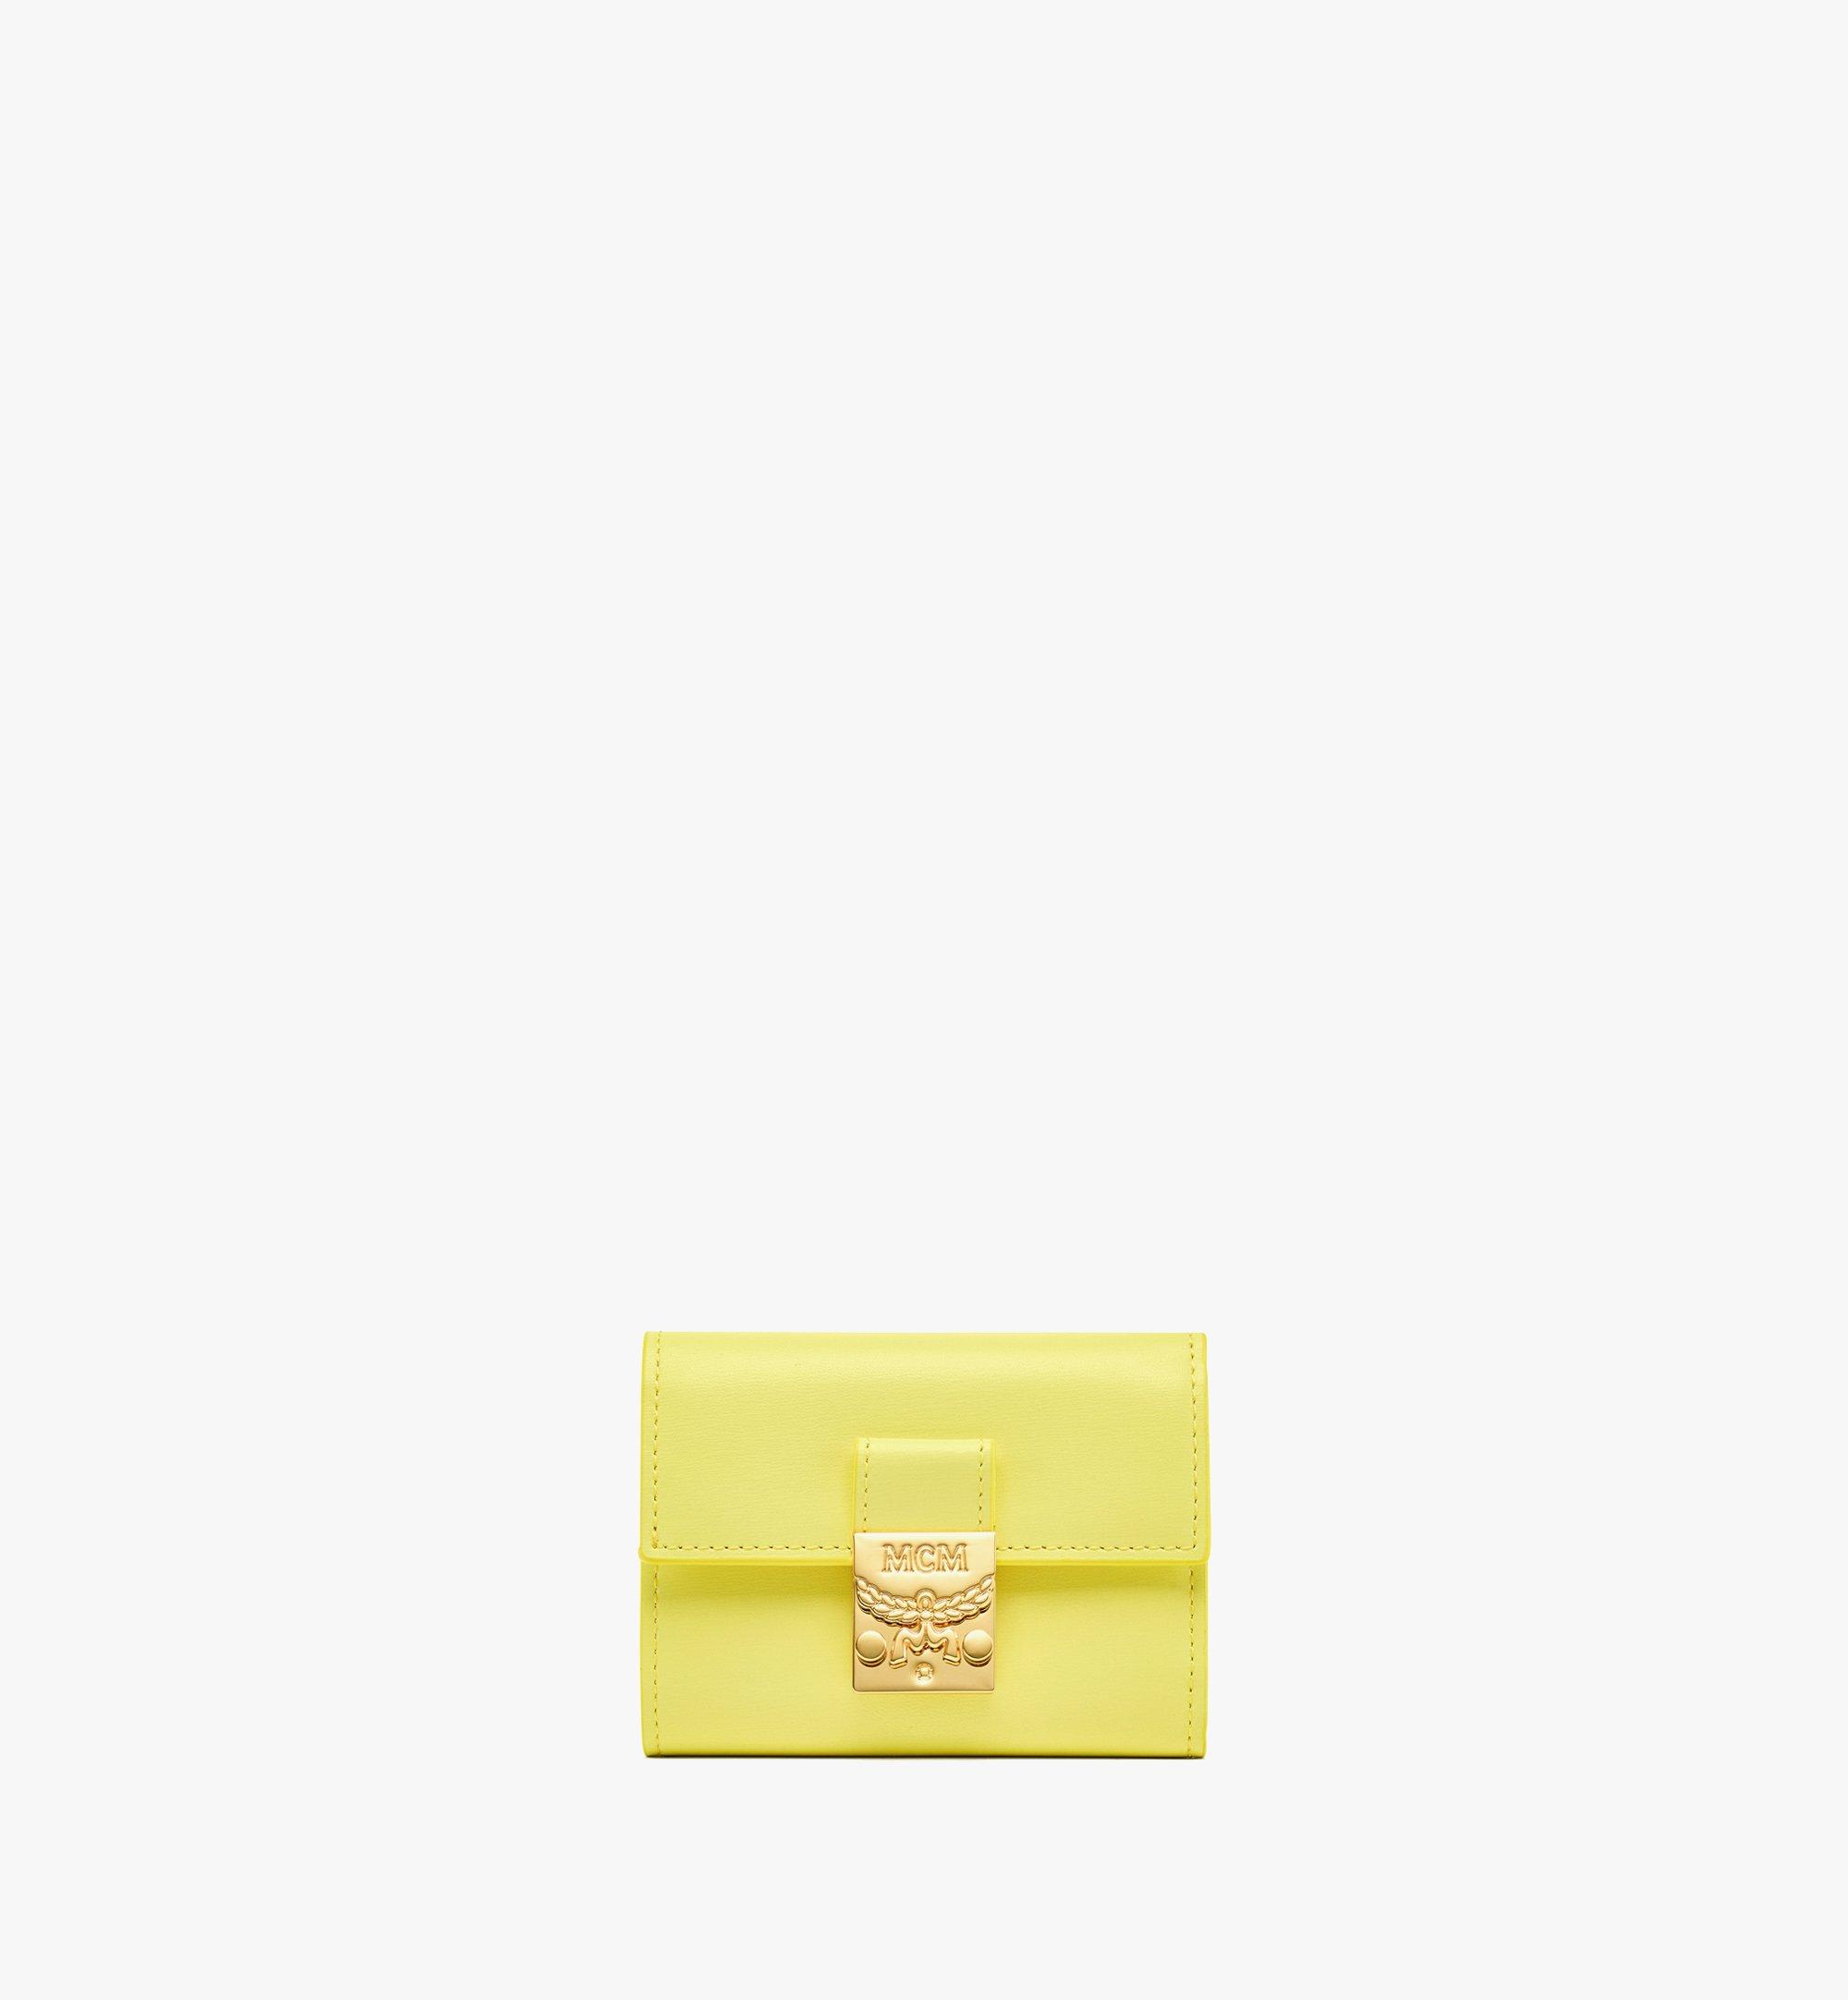 MCM Dreifach gefaltete Patricia Brieftasche aus spanischem Leder Yellow MYSBAPA01Y4001 Noch mehr sehen 1